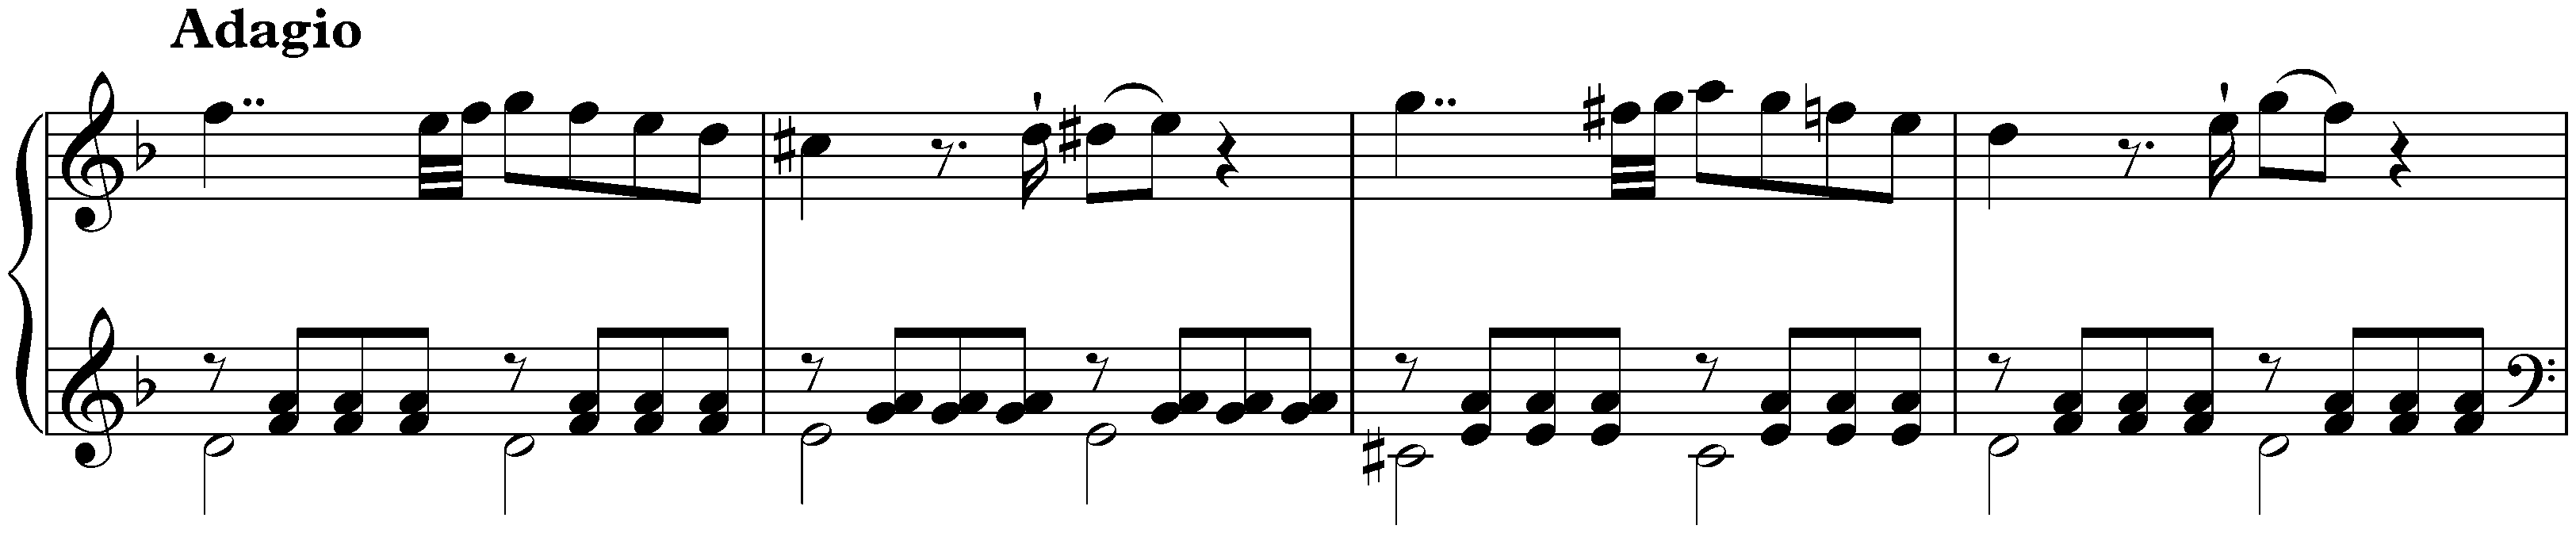 Fantasie in D minor, KV 397/385g